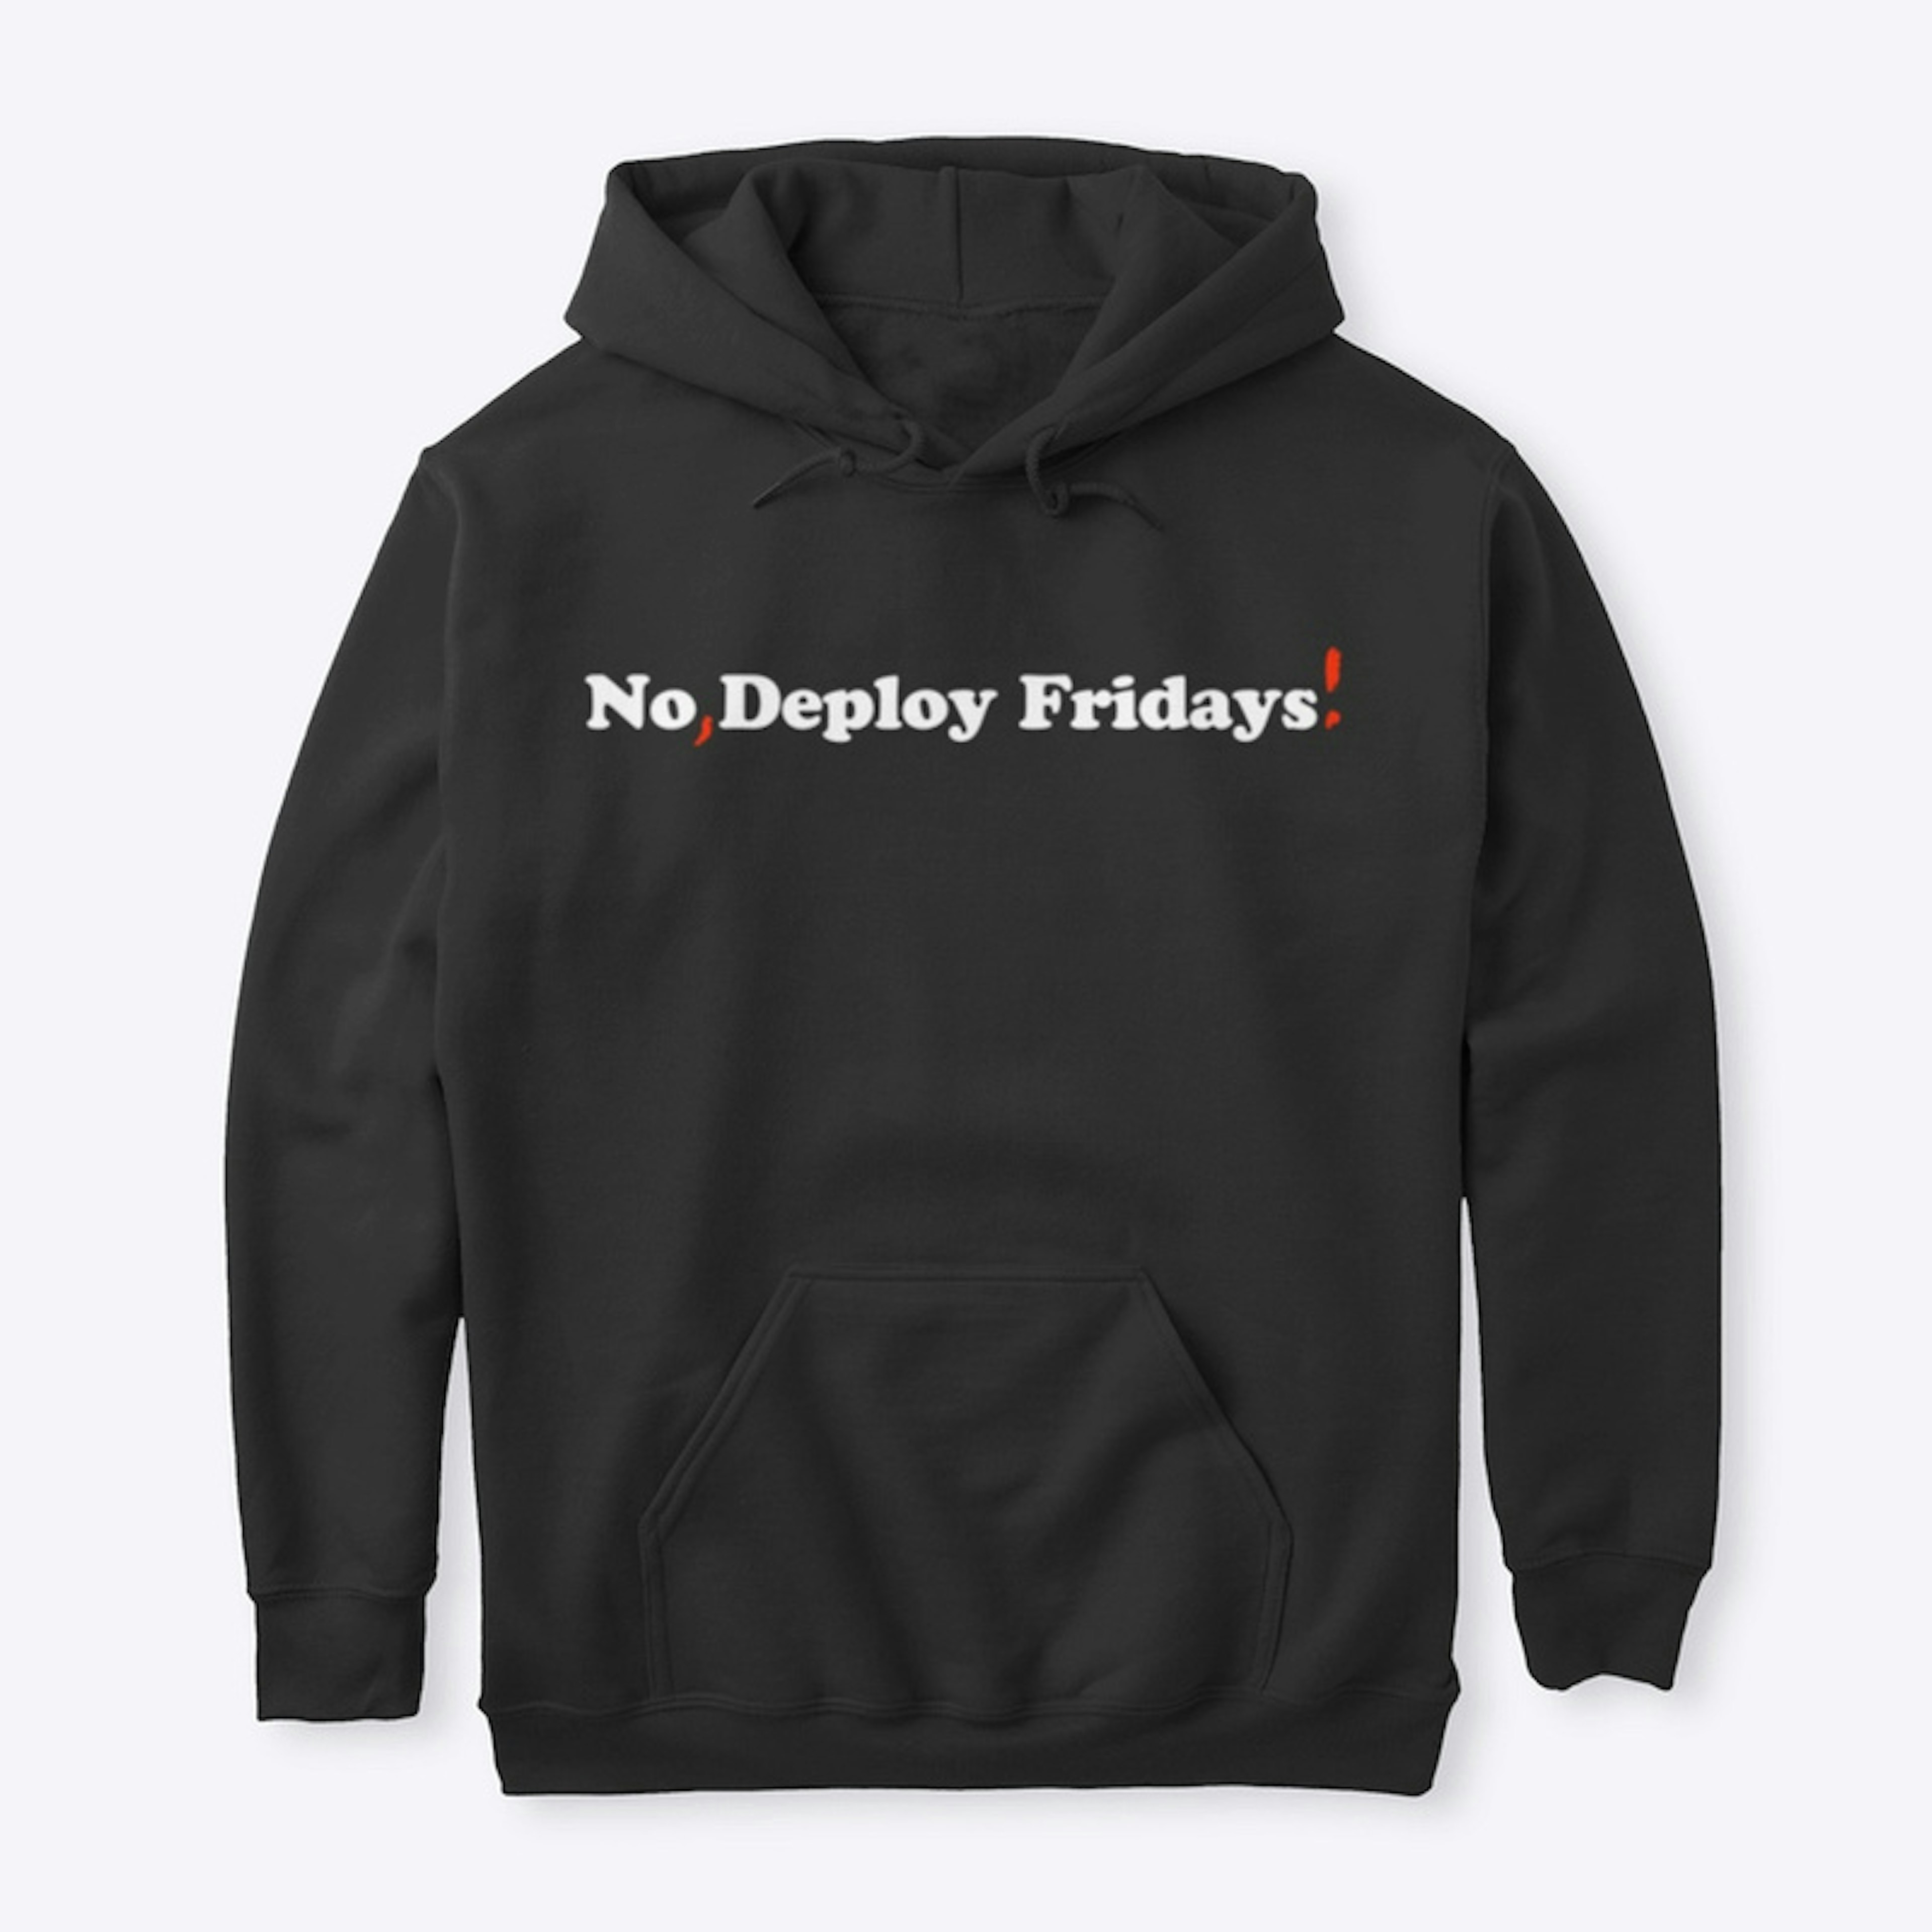 No, Deploy Fridays!